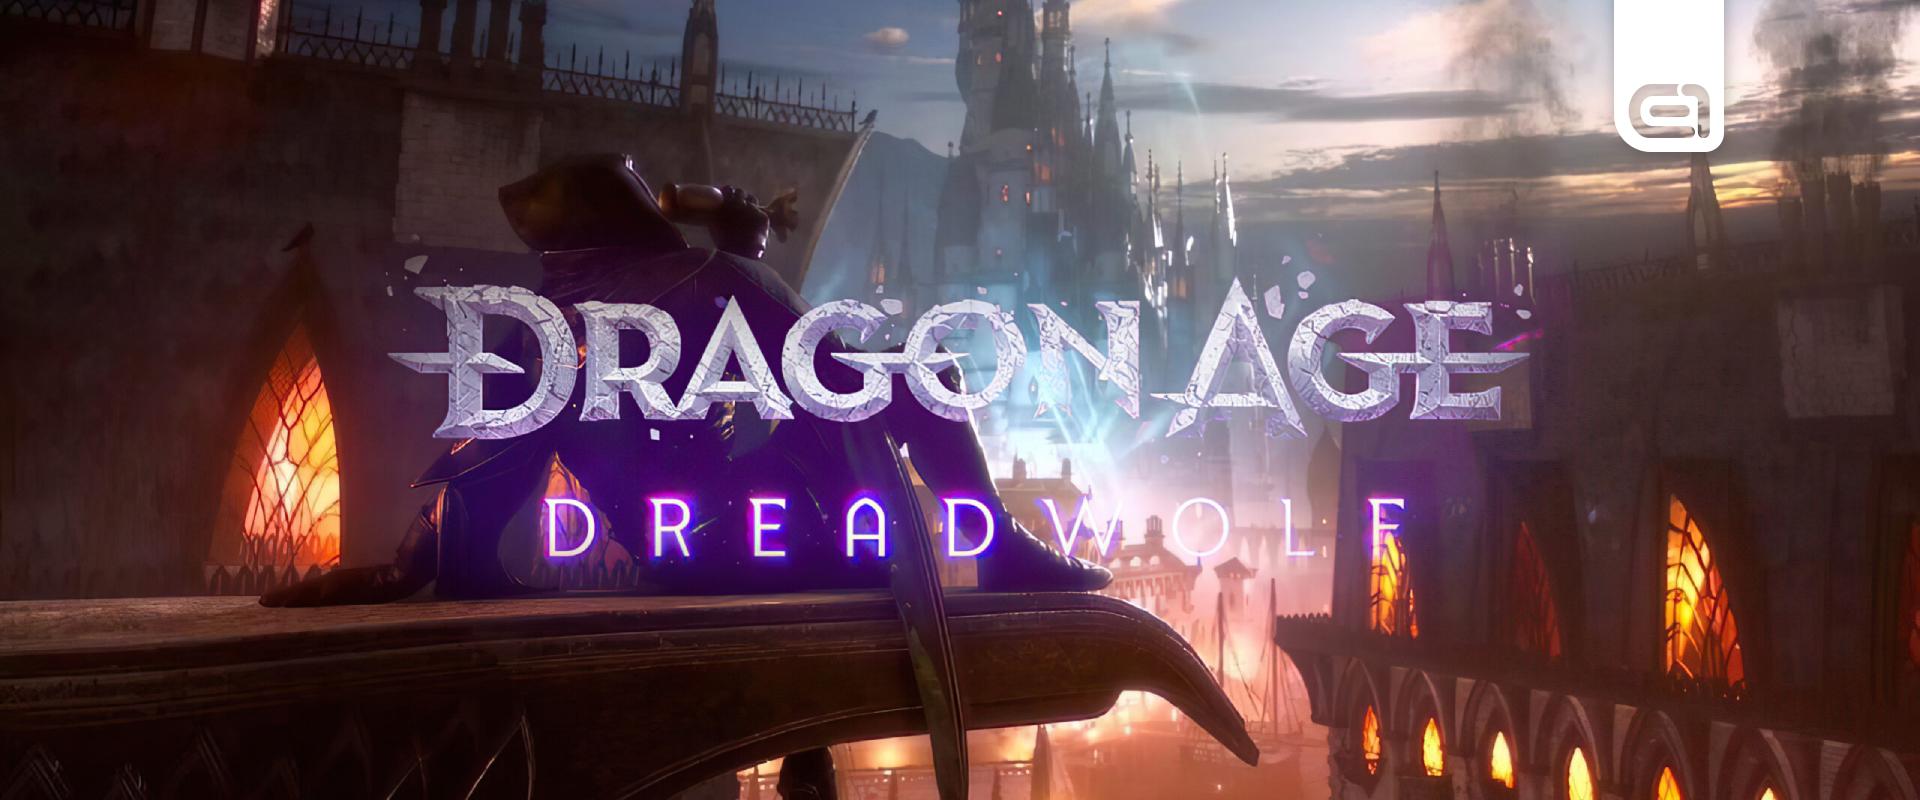 Dragon Age Dreadwolf - Harci animációk és képek szivárogtak ki